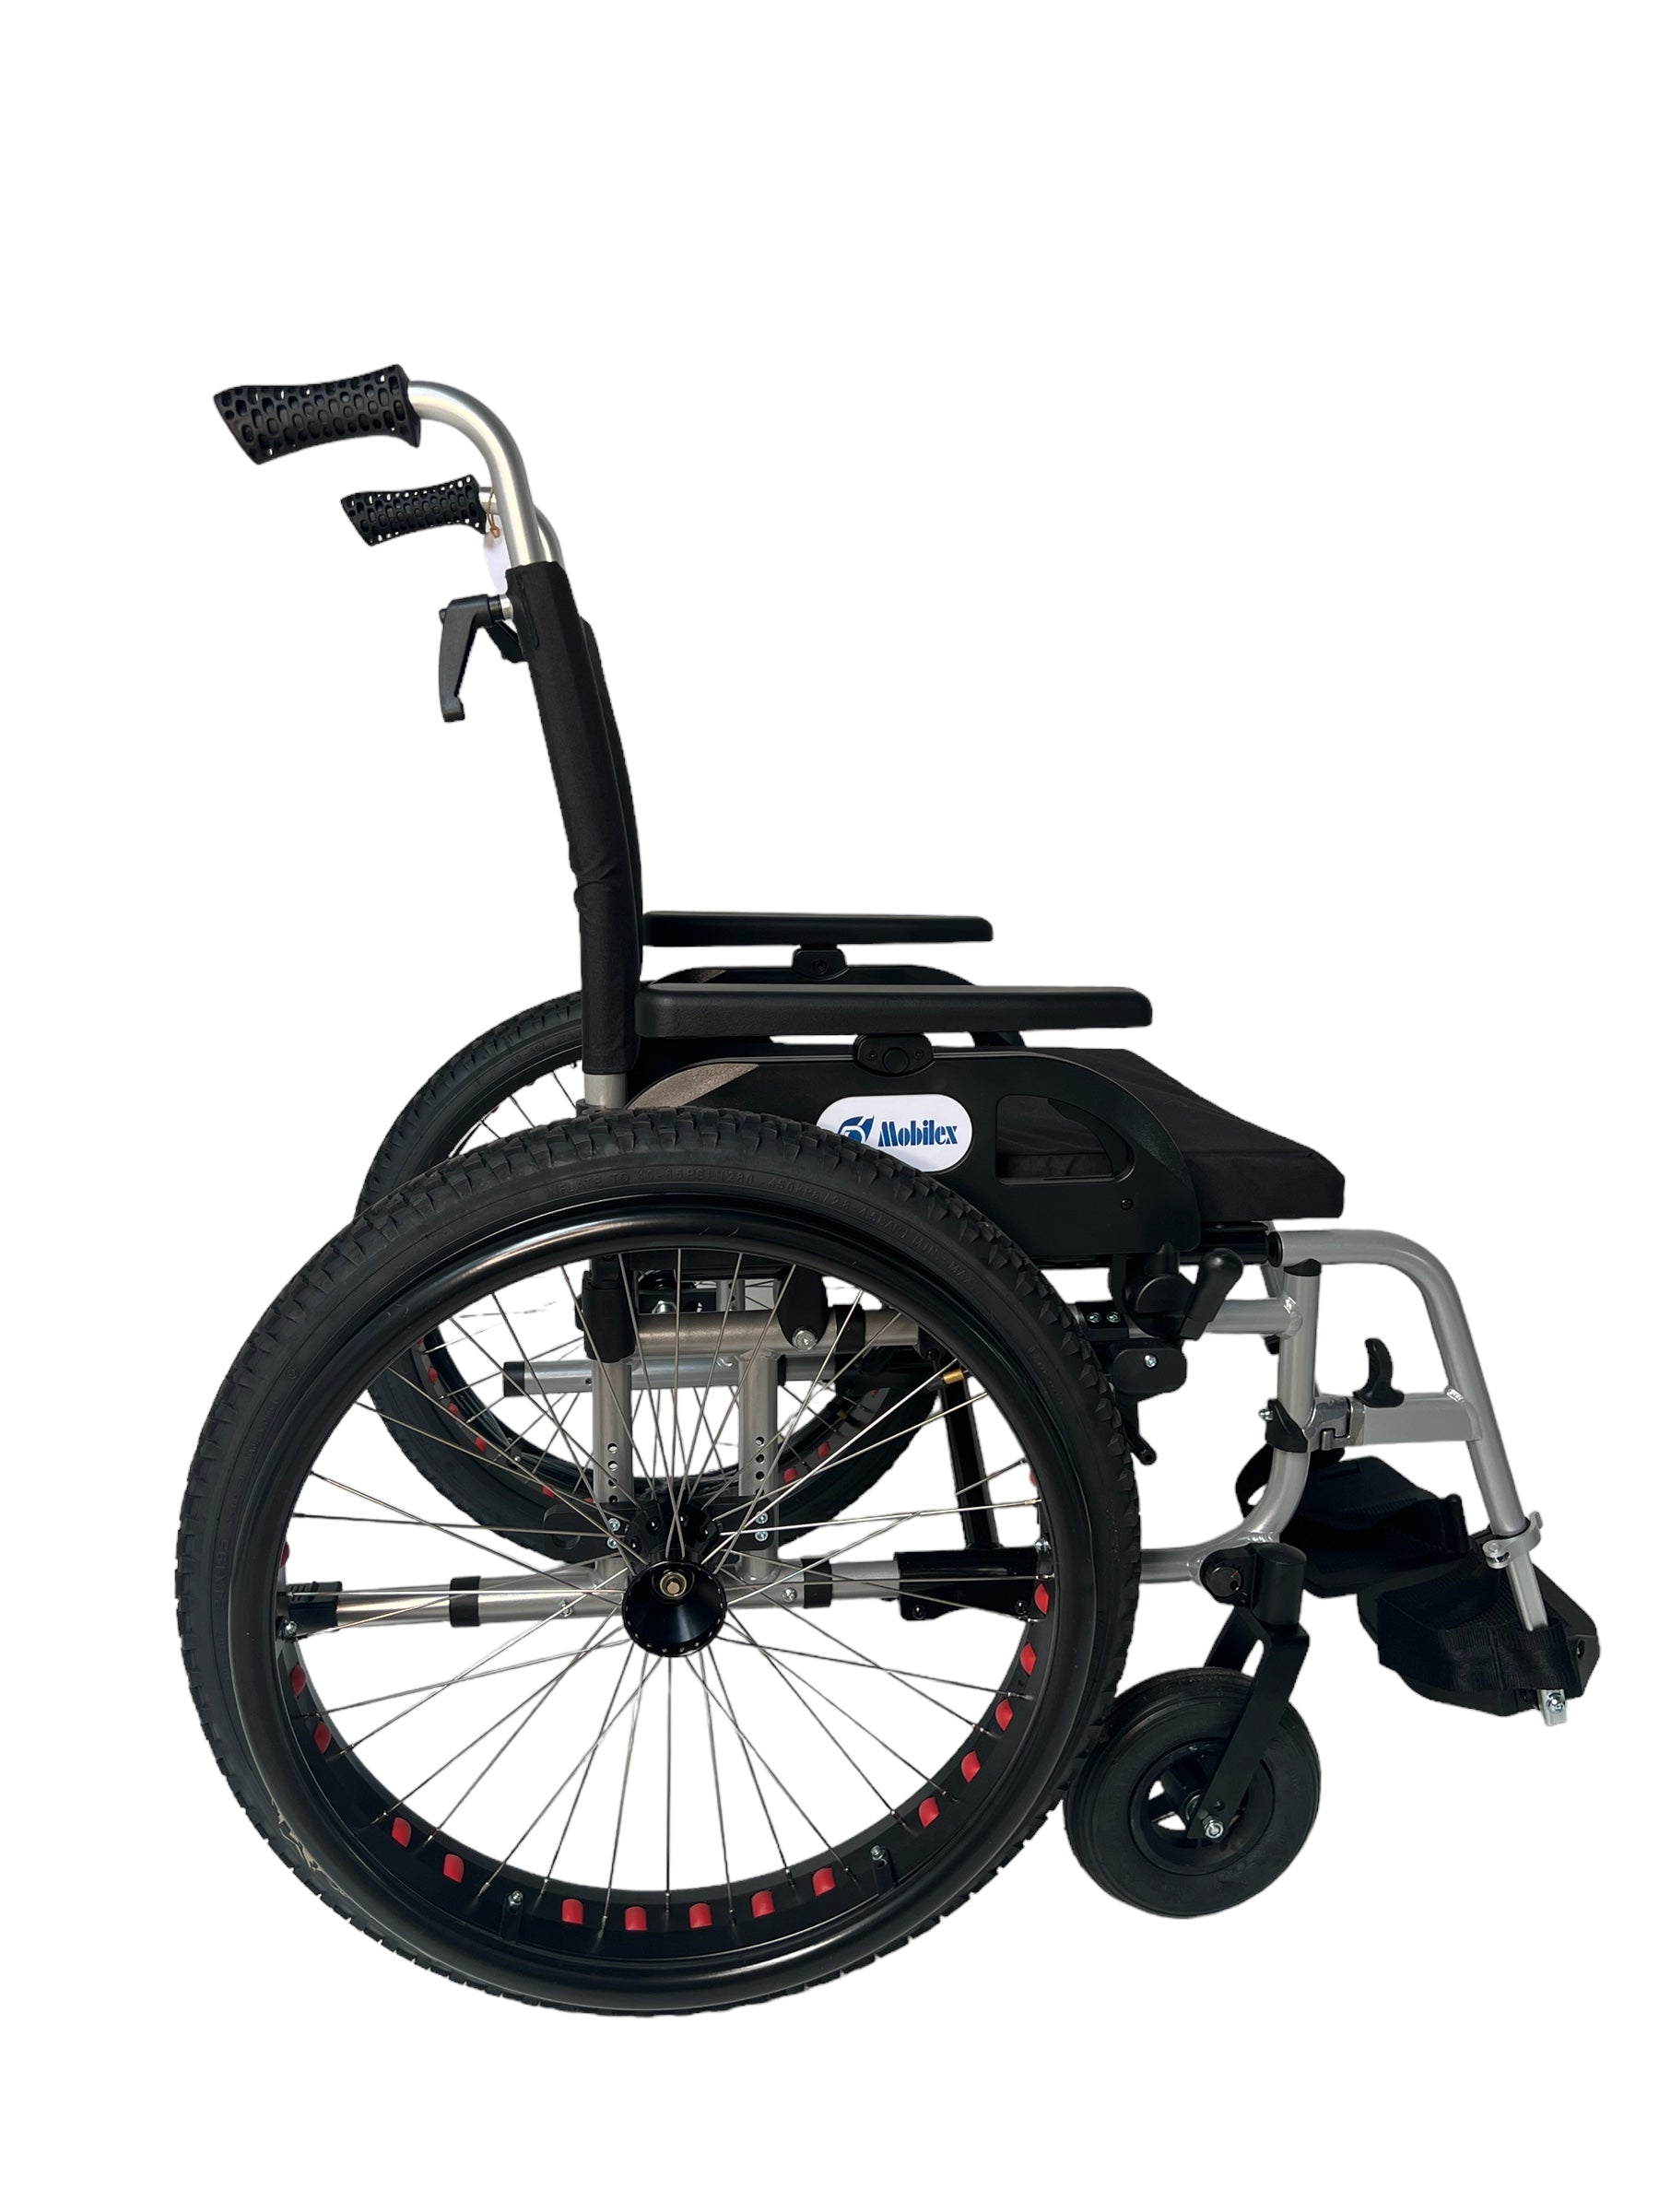 OFF-ROAD kørestol. Super lækker kørestol med terrængående dæk. 4 størrelser., 48 cm